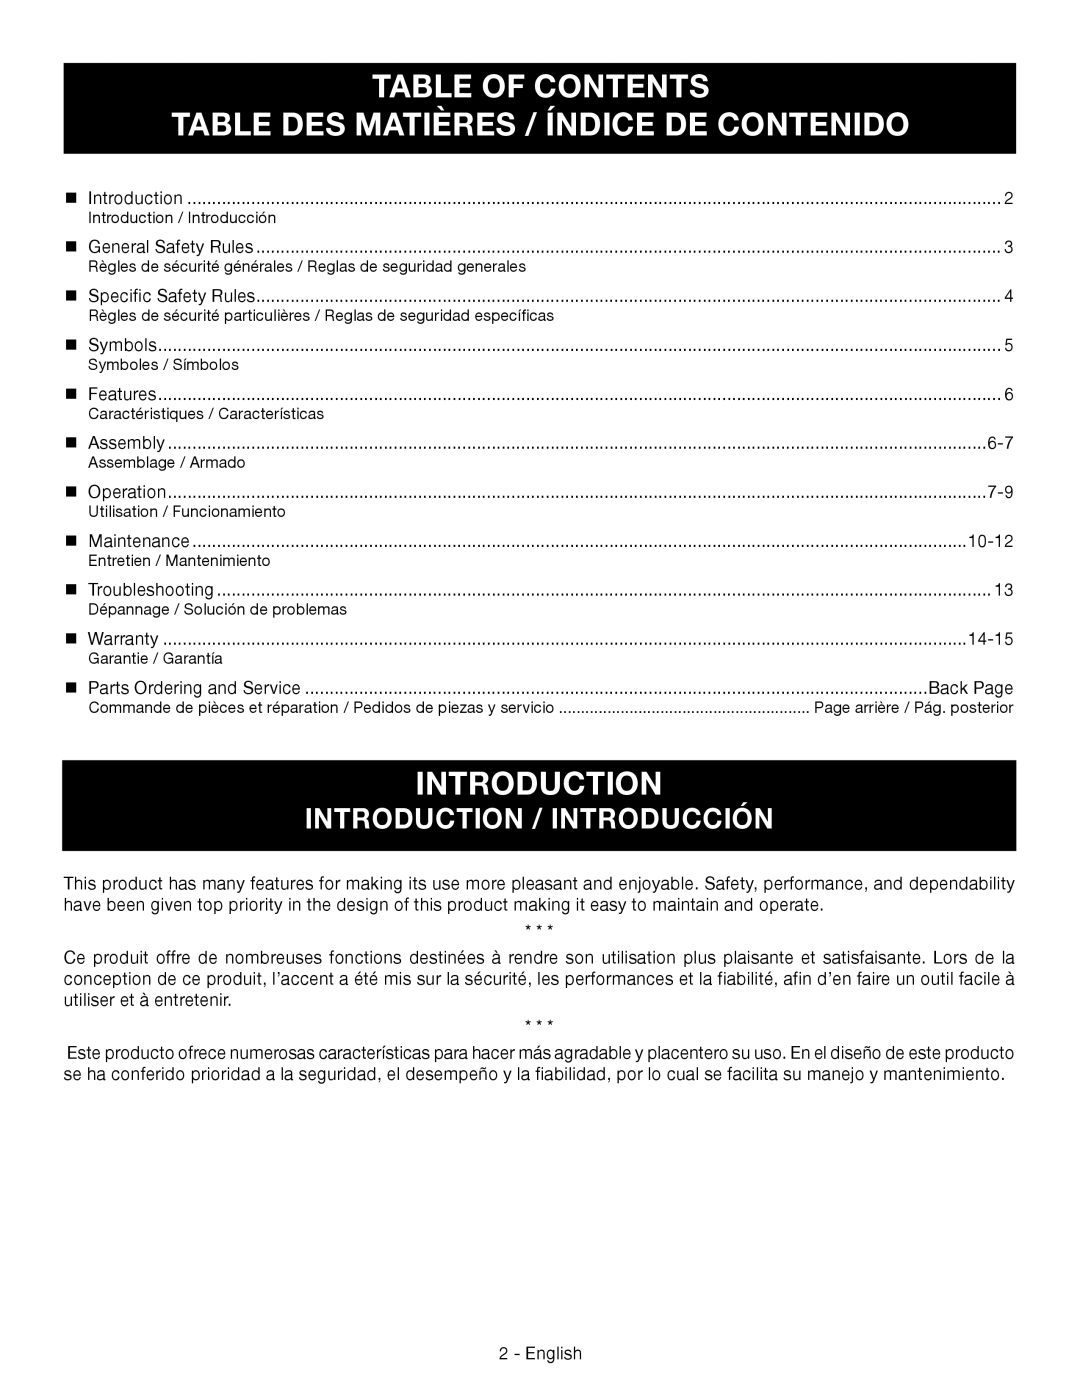 Ryobi RY09460 Table Of Contents Table Des Matières / Índice De Contenido, Introduction / Introducción 